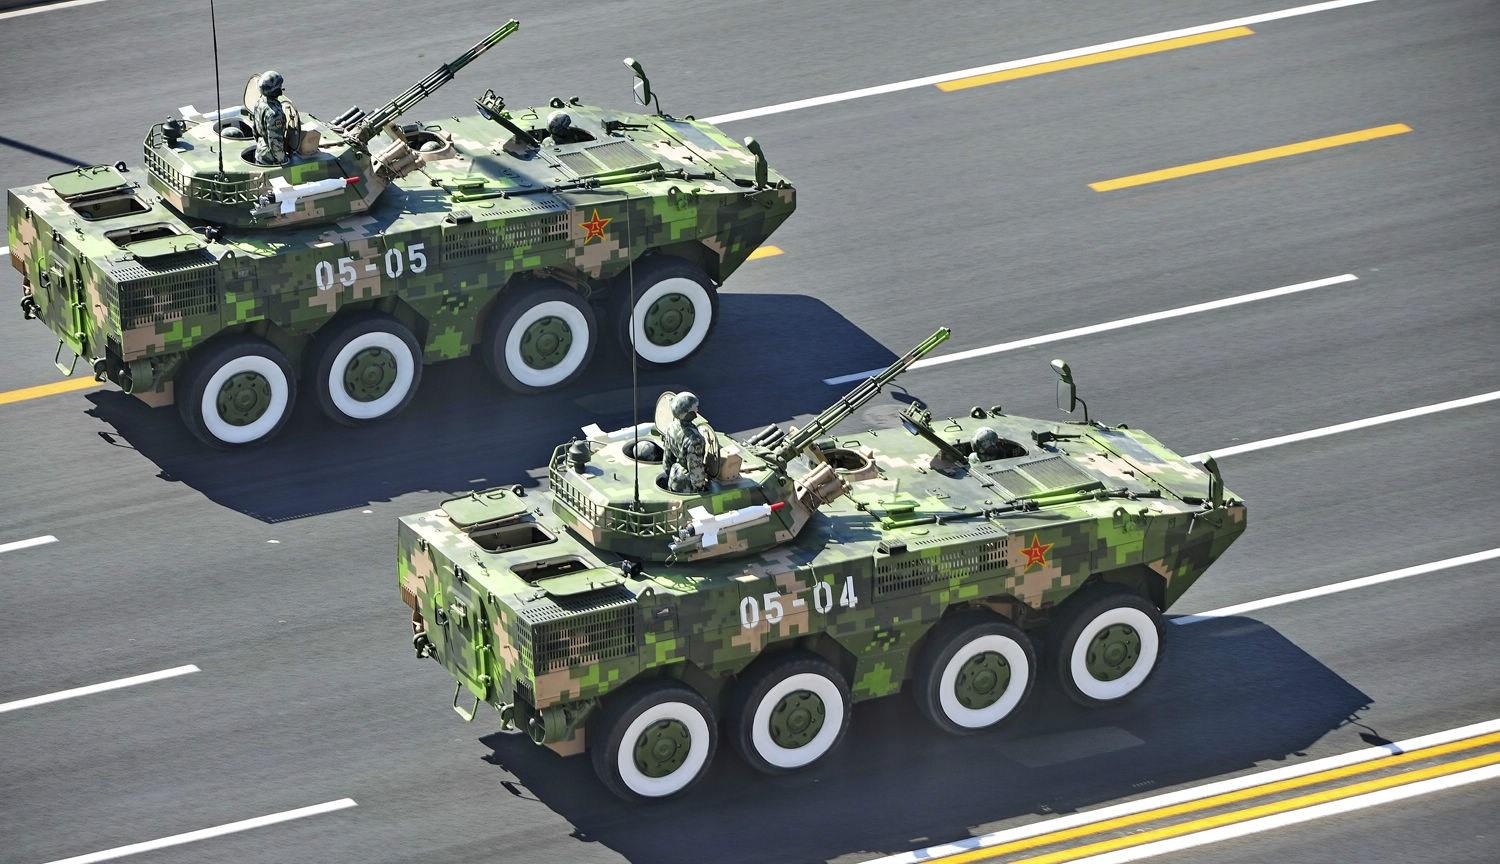 这次实弹演习中的出动的装甲车,为中国8x8装甲车族中的zbl-08型轮式